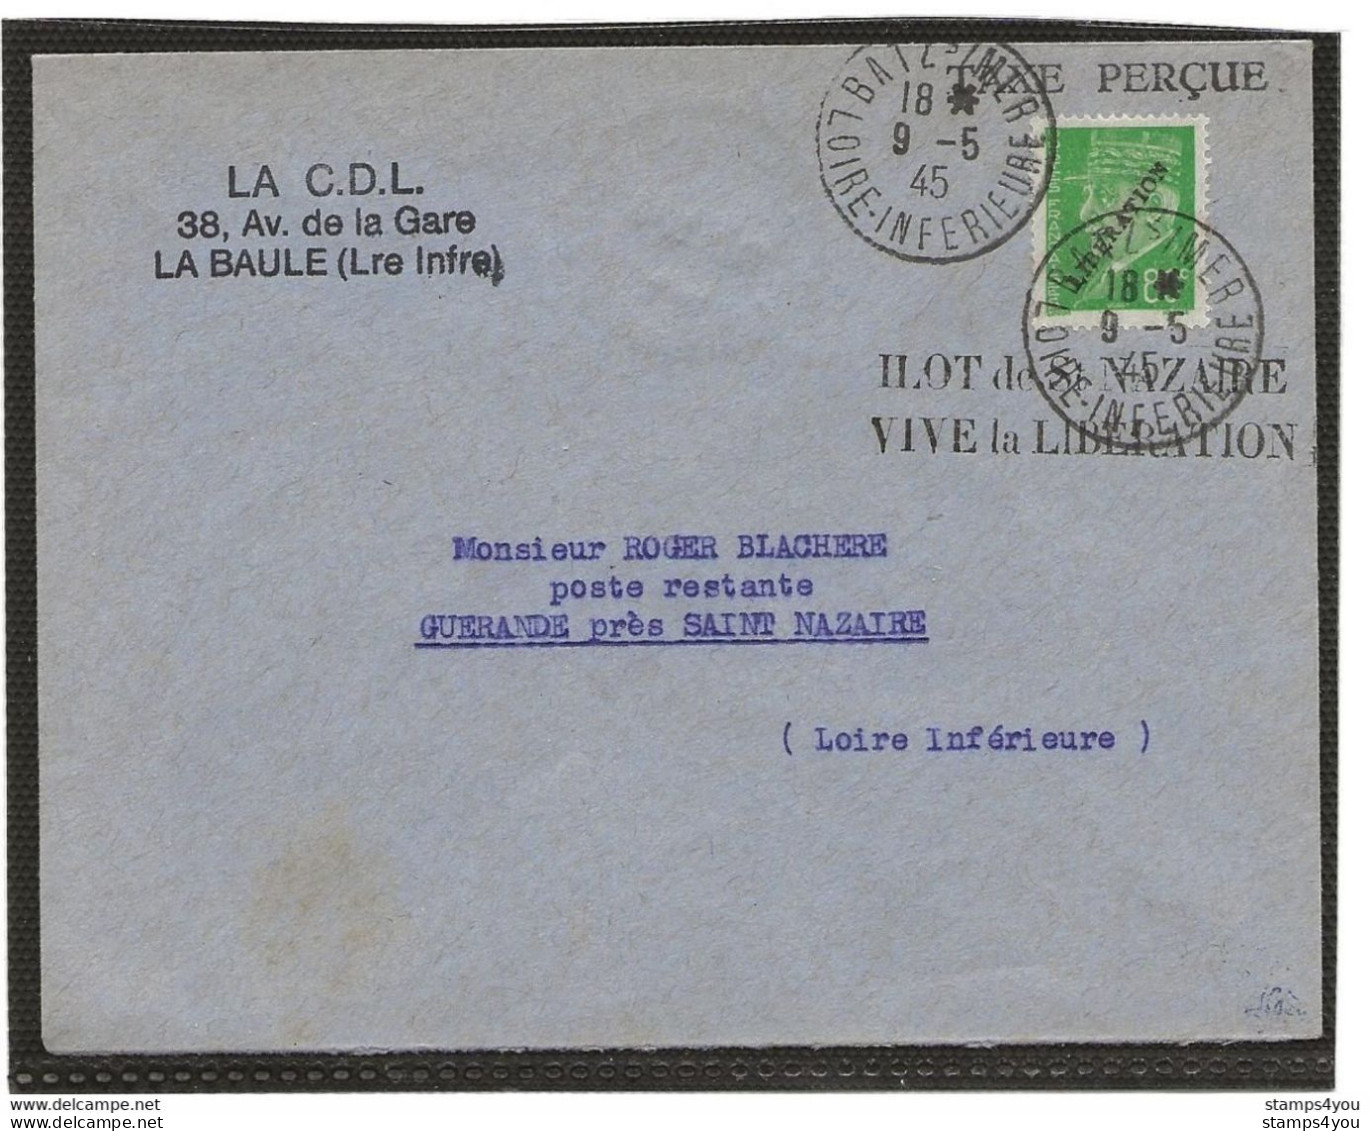 150 - 76 - Superbe Enveloppe Avec Timbre Libération - Ilot De St Nazaire Vive La Libération 19.5.1945 - WW2